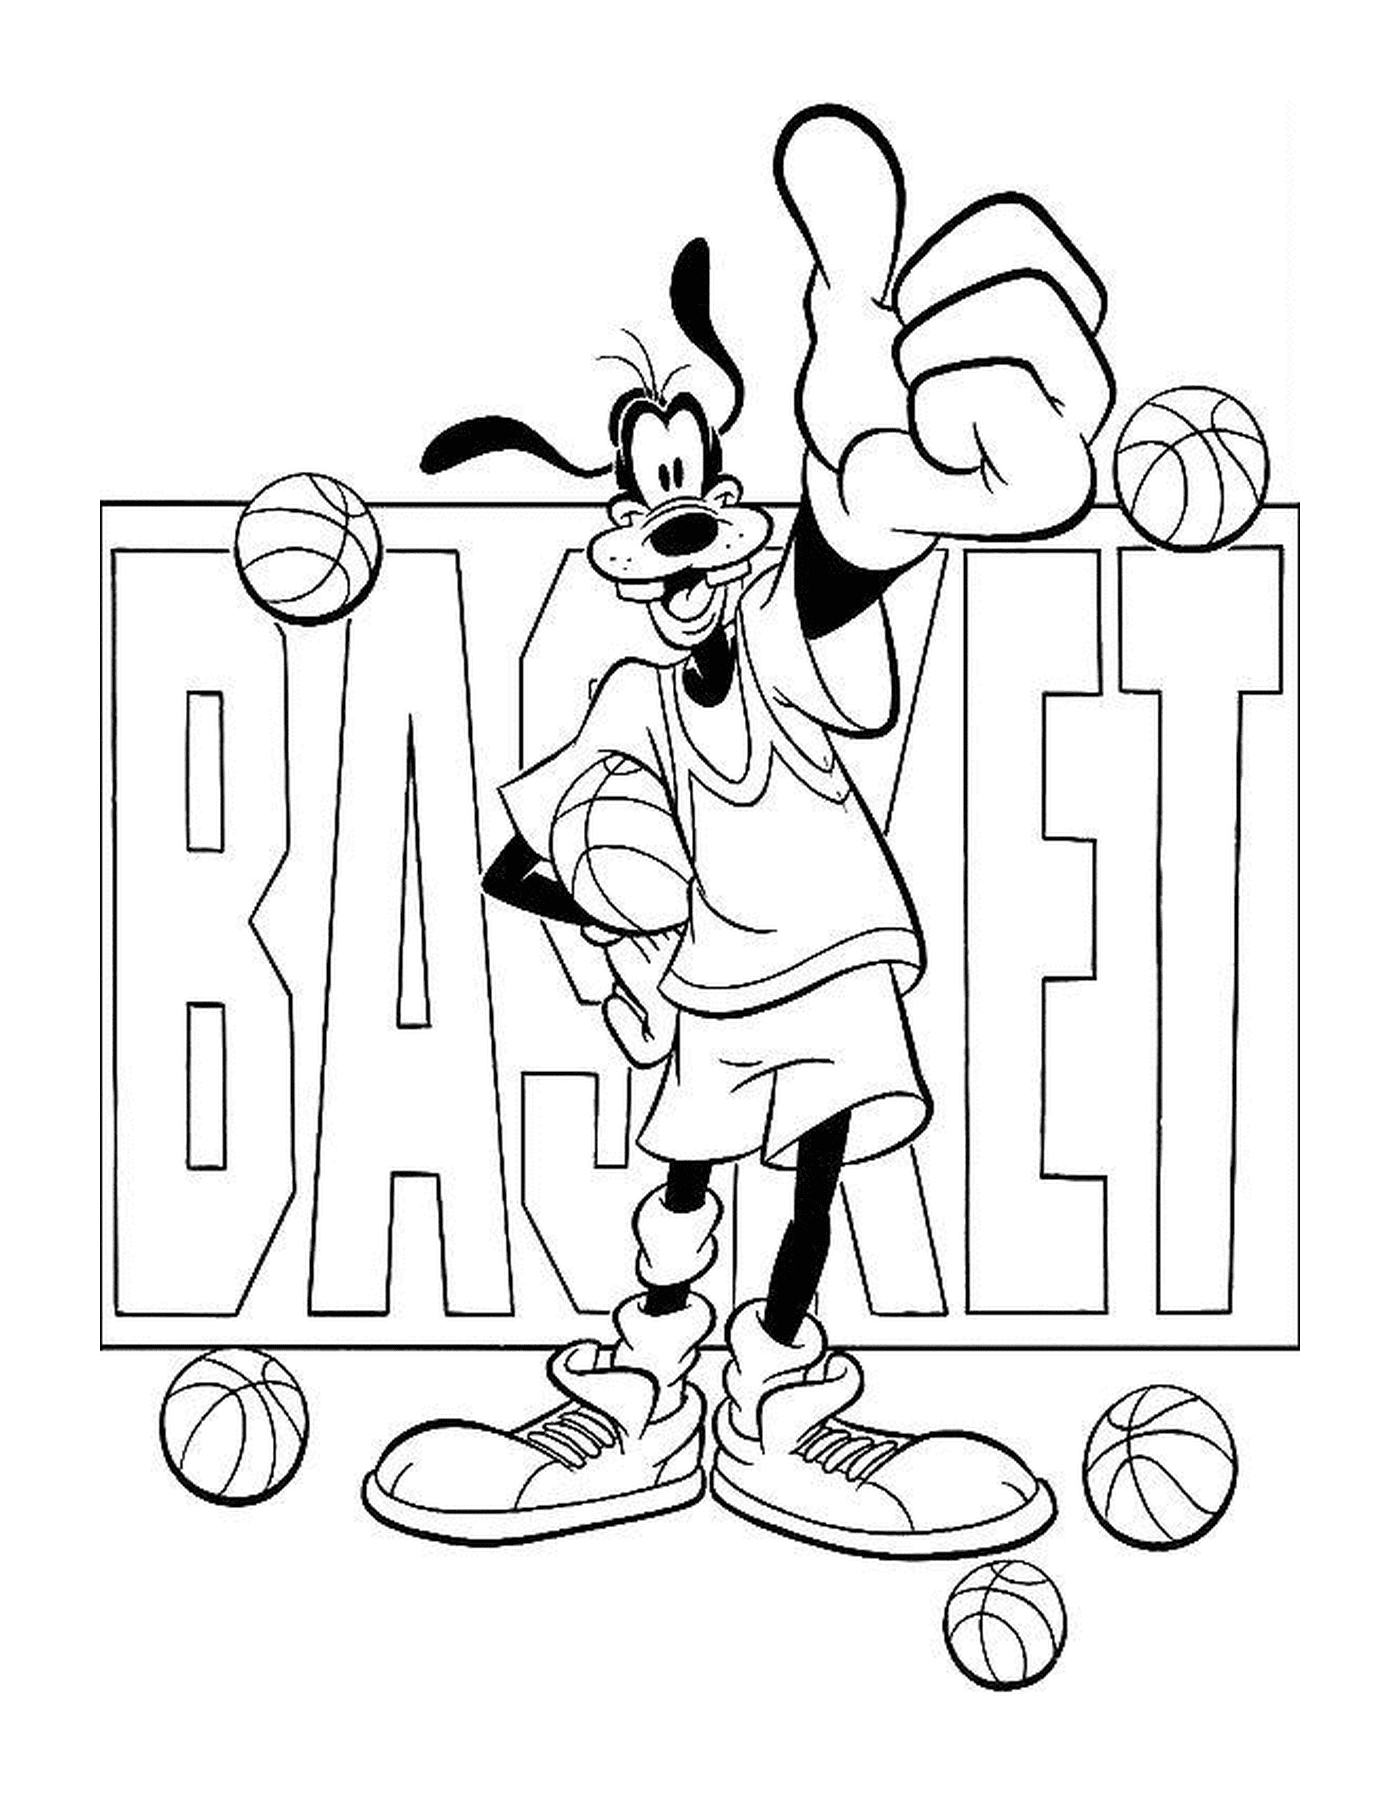  Dingo gosta de basquete e segura uma bola na frente da cesta de palavras 